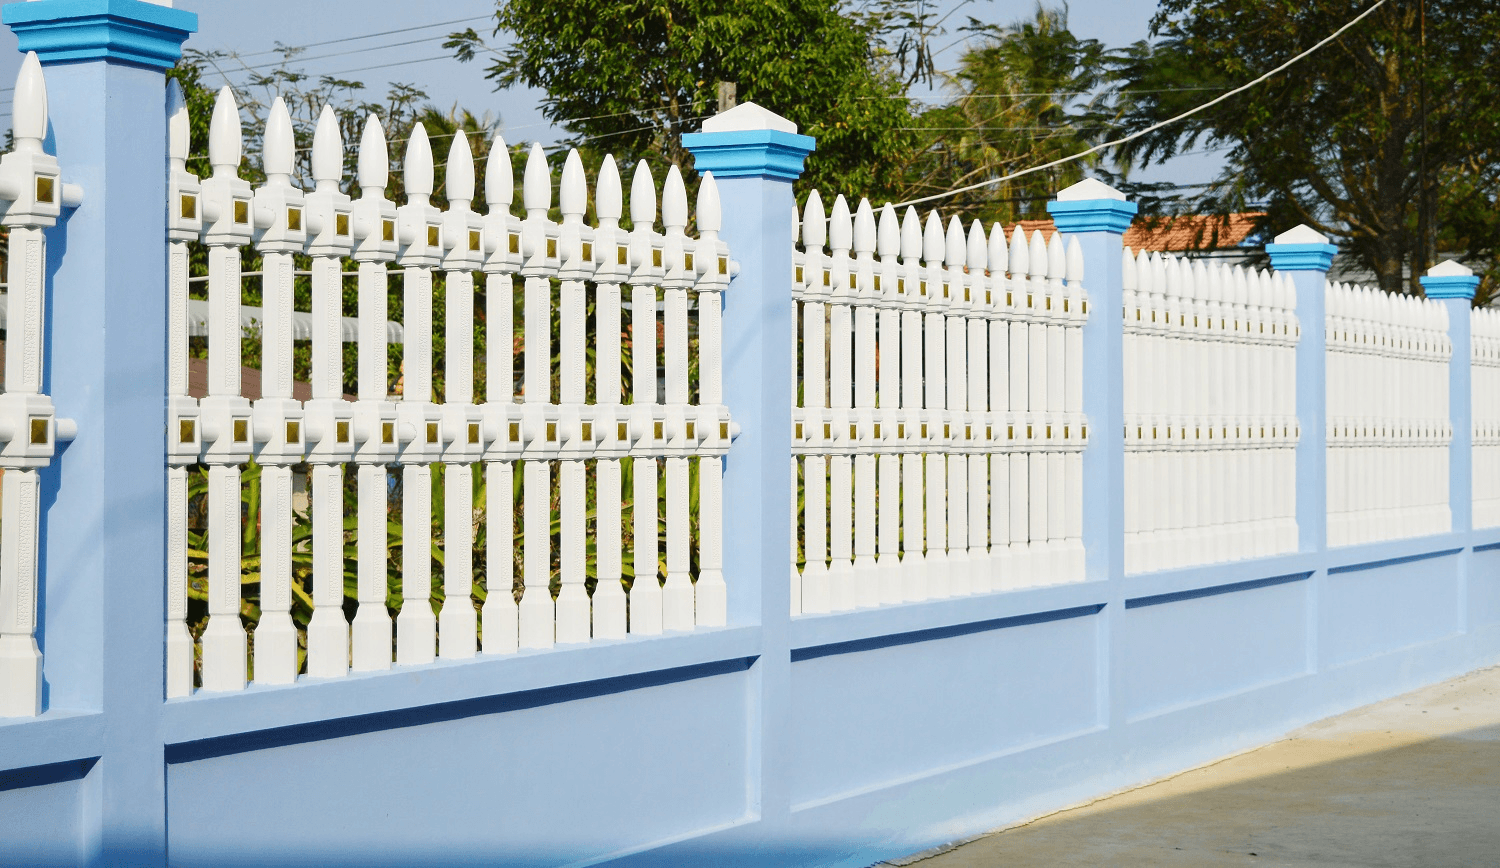 Tại sao sơn tường rào là một trong những công việc quan trọng khi xây dựng nhà?